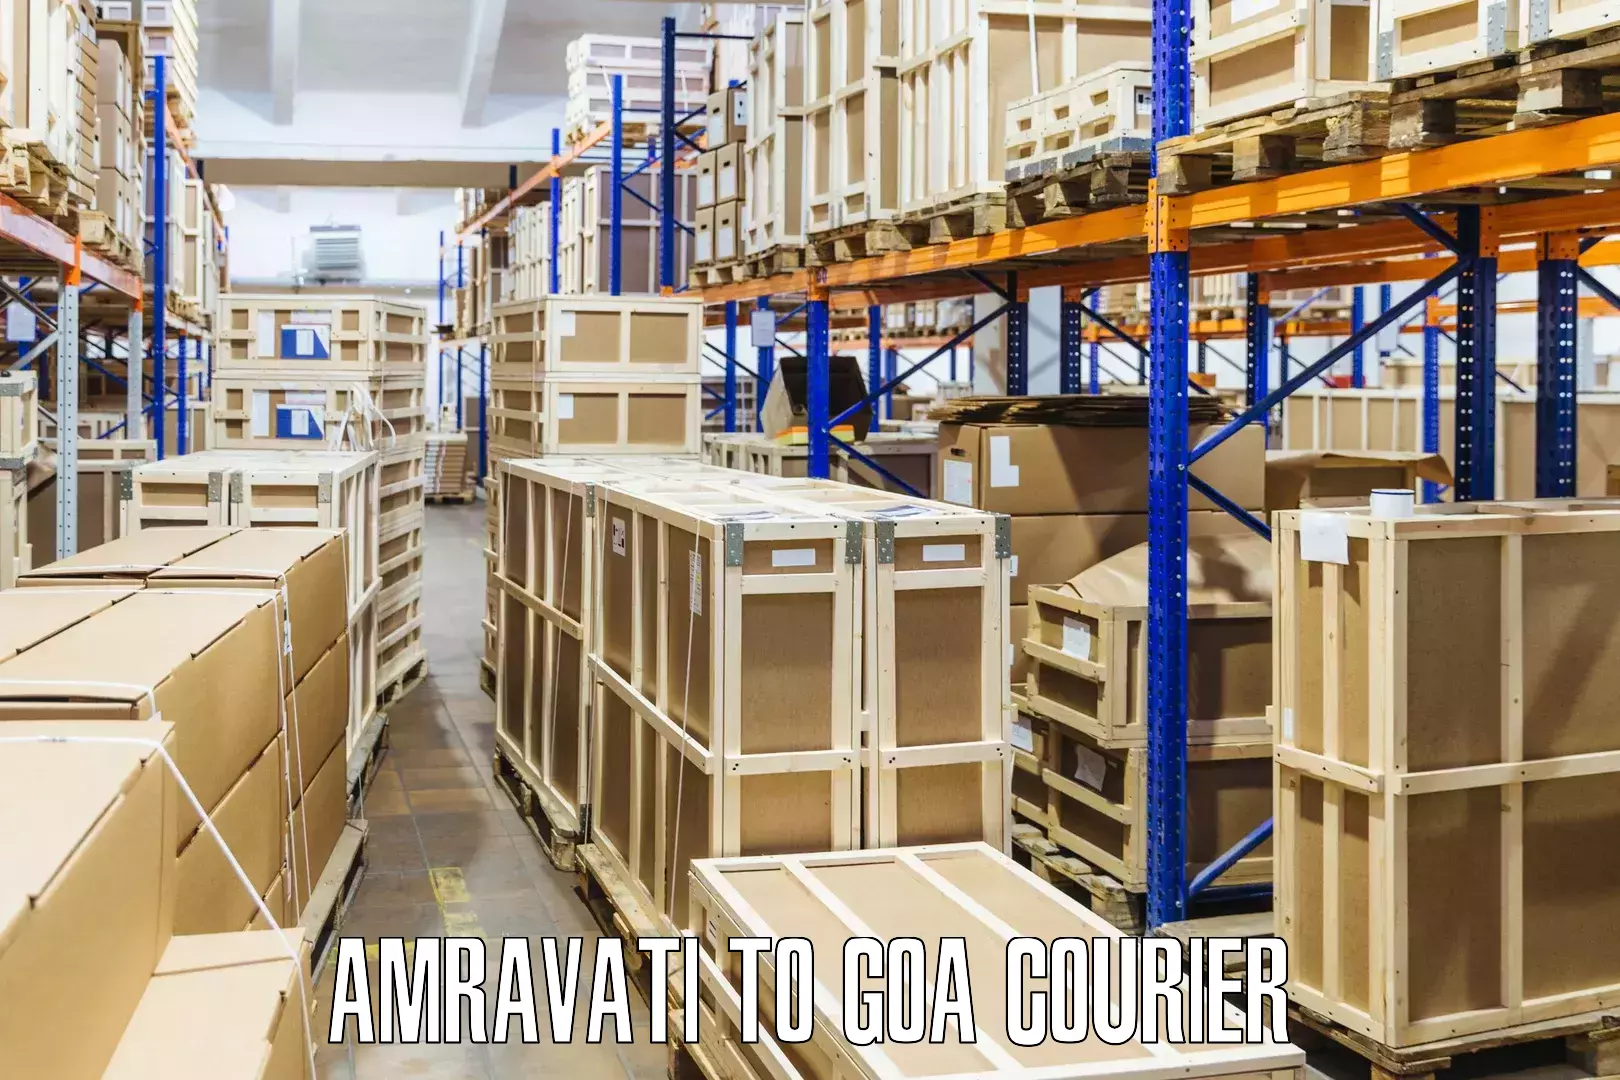 Door-to-door freight service Amravati to Bardez